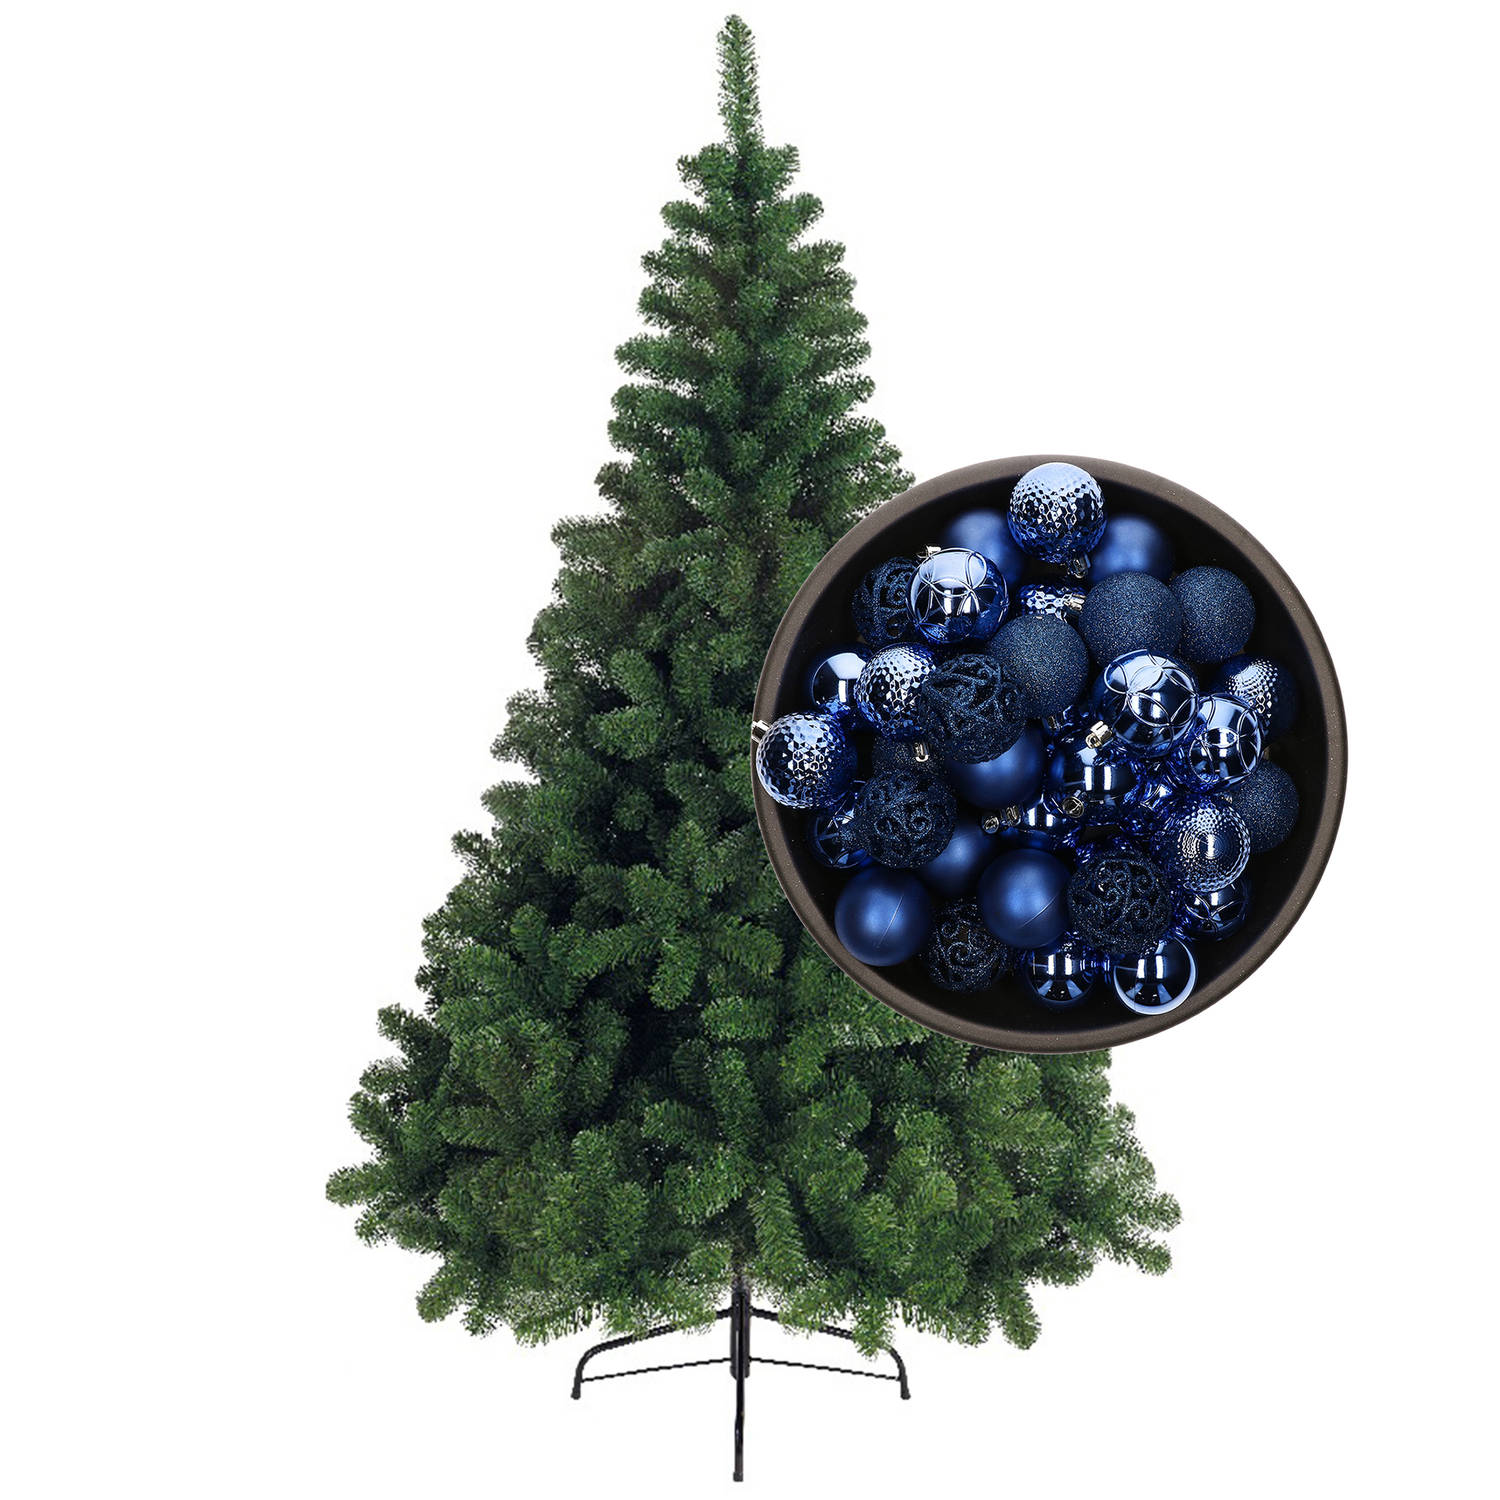 Bellatio Decorations kunst kerstboom 120 cm met kerstballen kobalt blauw Kunstkerstboom